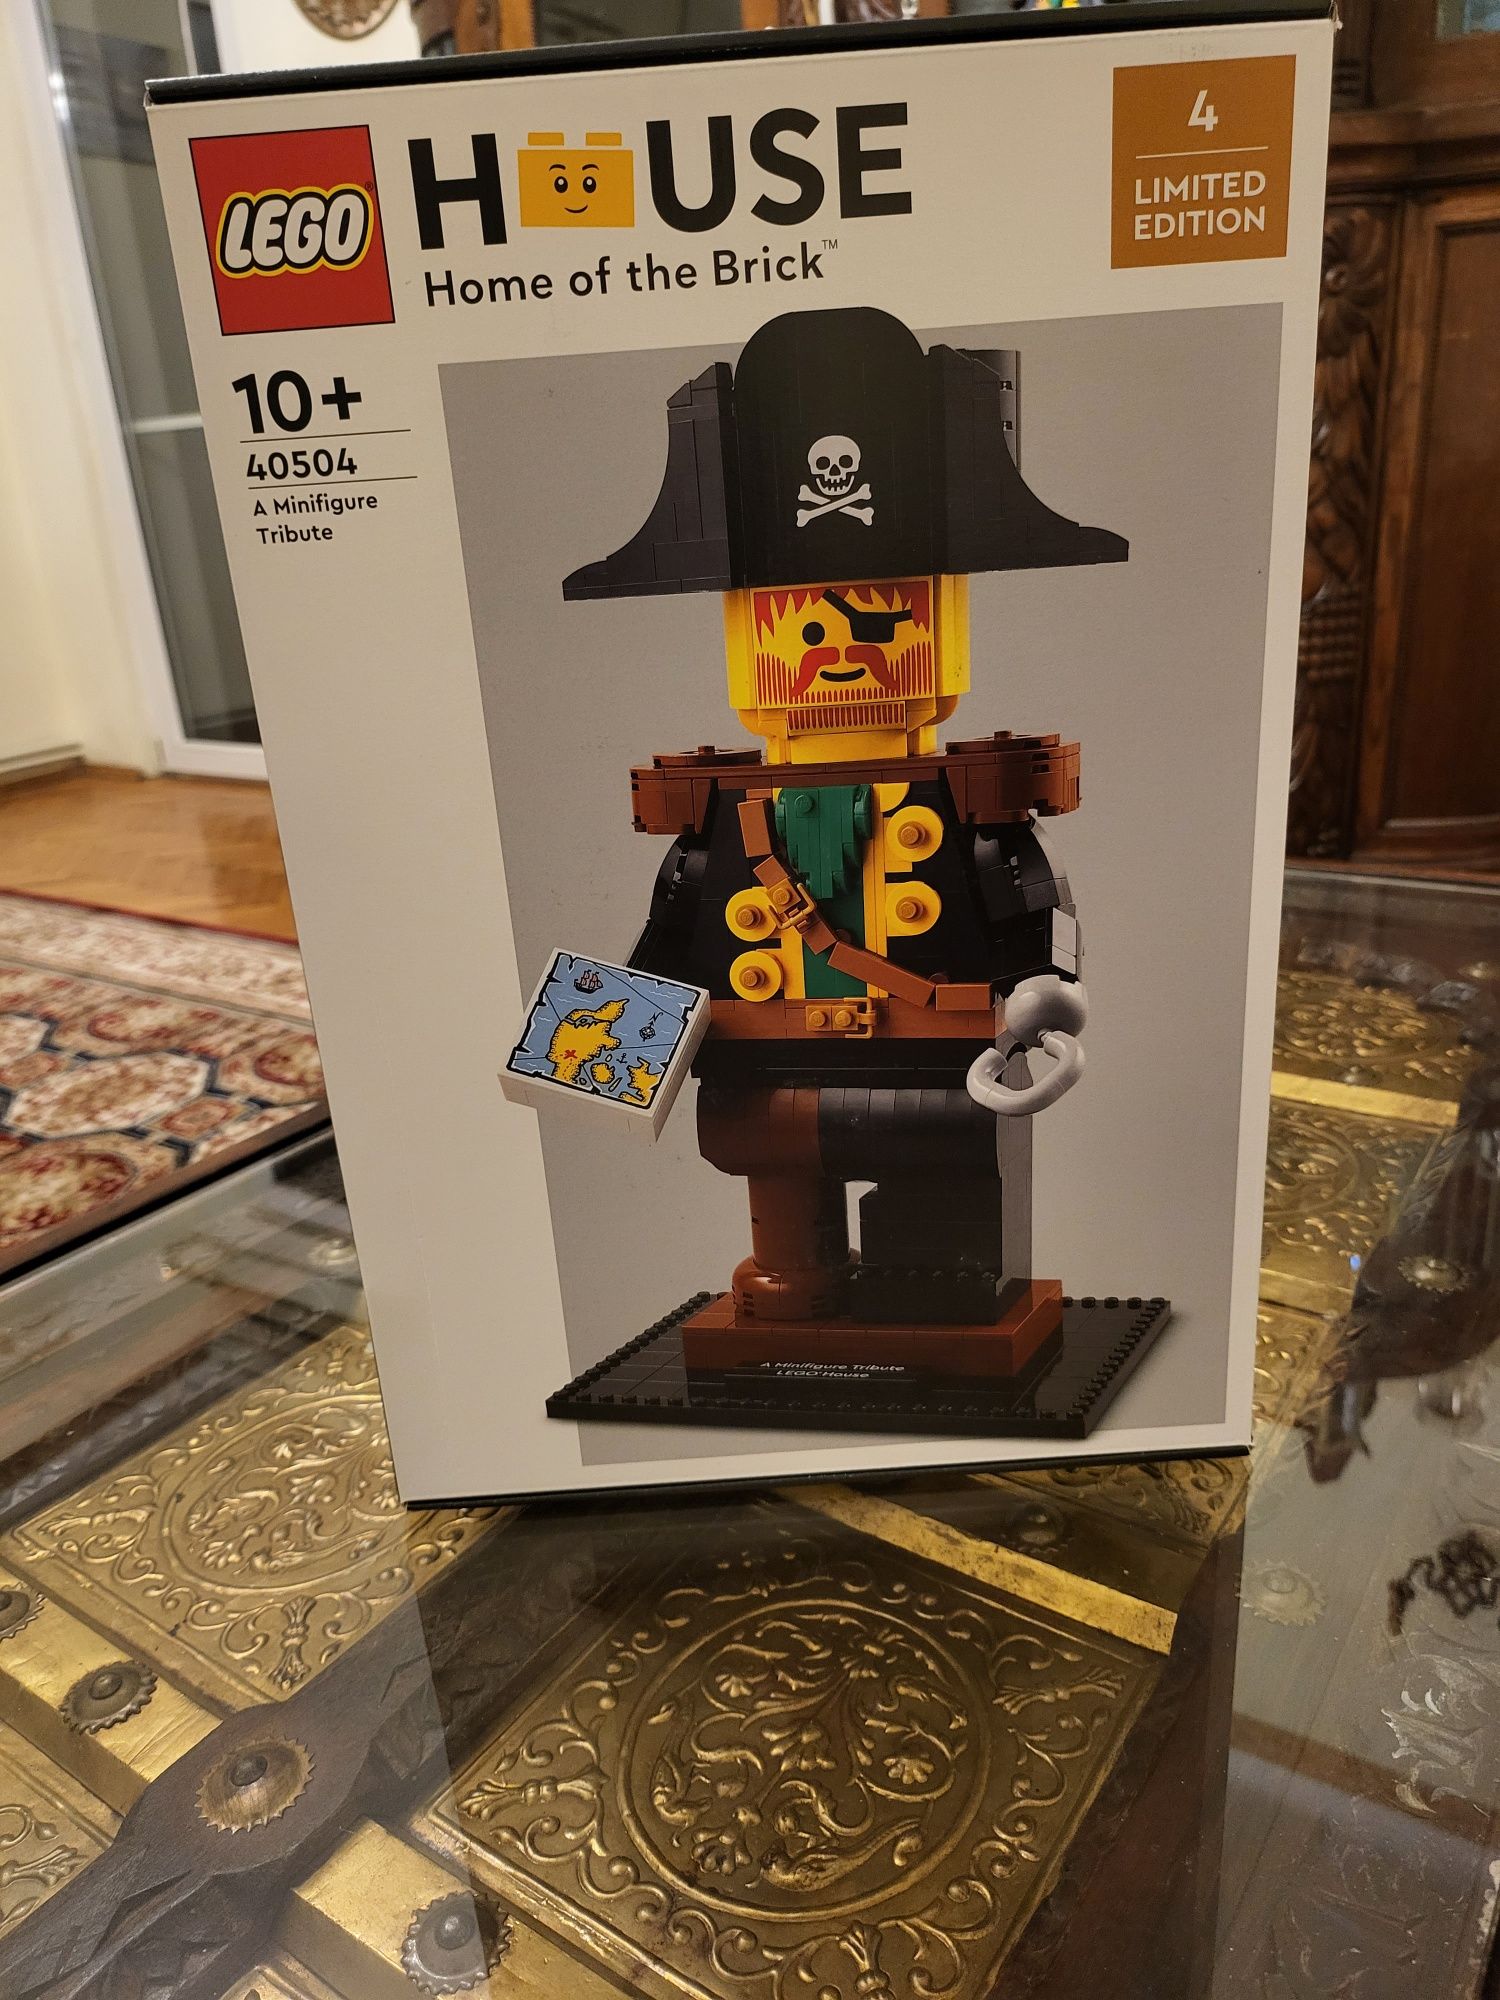 Vand Lego House 40504 editie limitata pirat pirates pirati